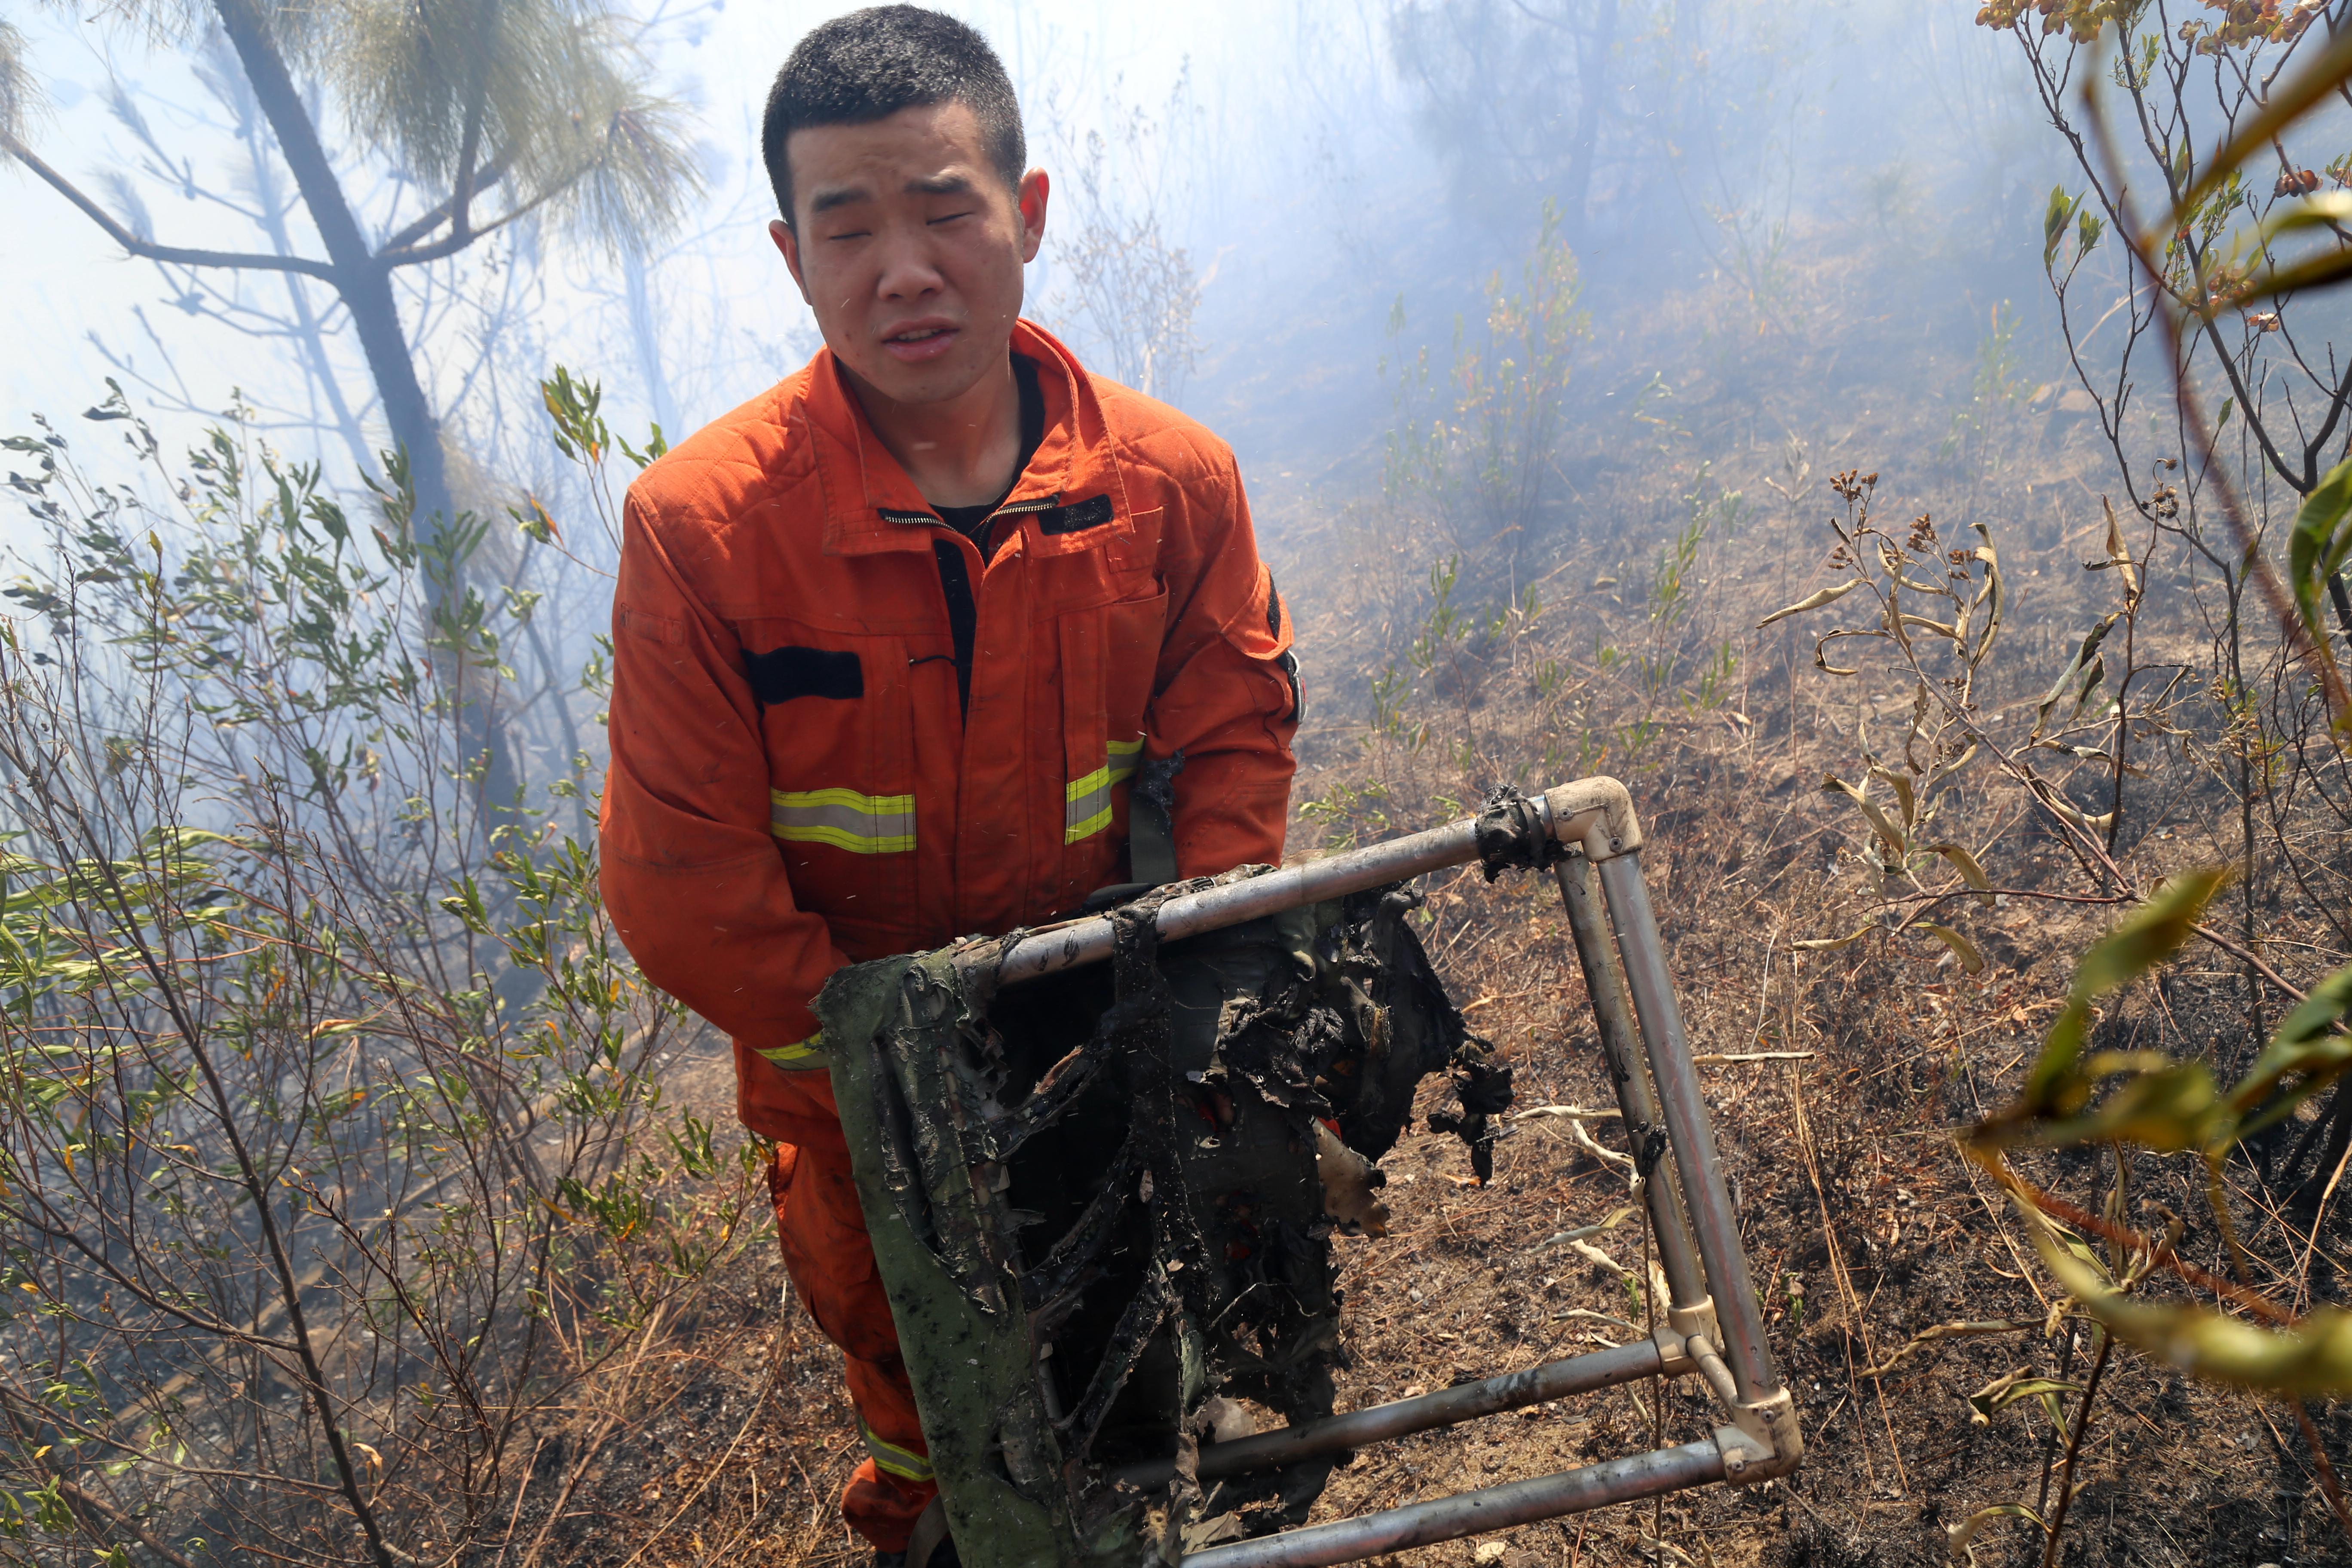 直击四川春节森林大火现场:灭火装备被烧毁,7名消防员死里逃生